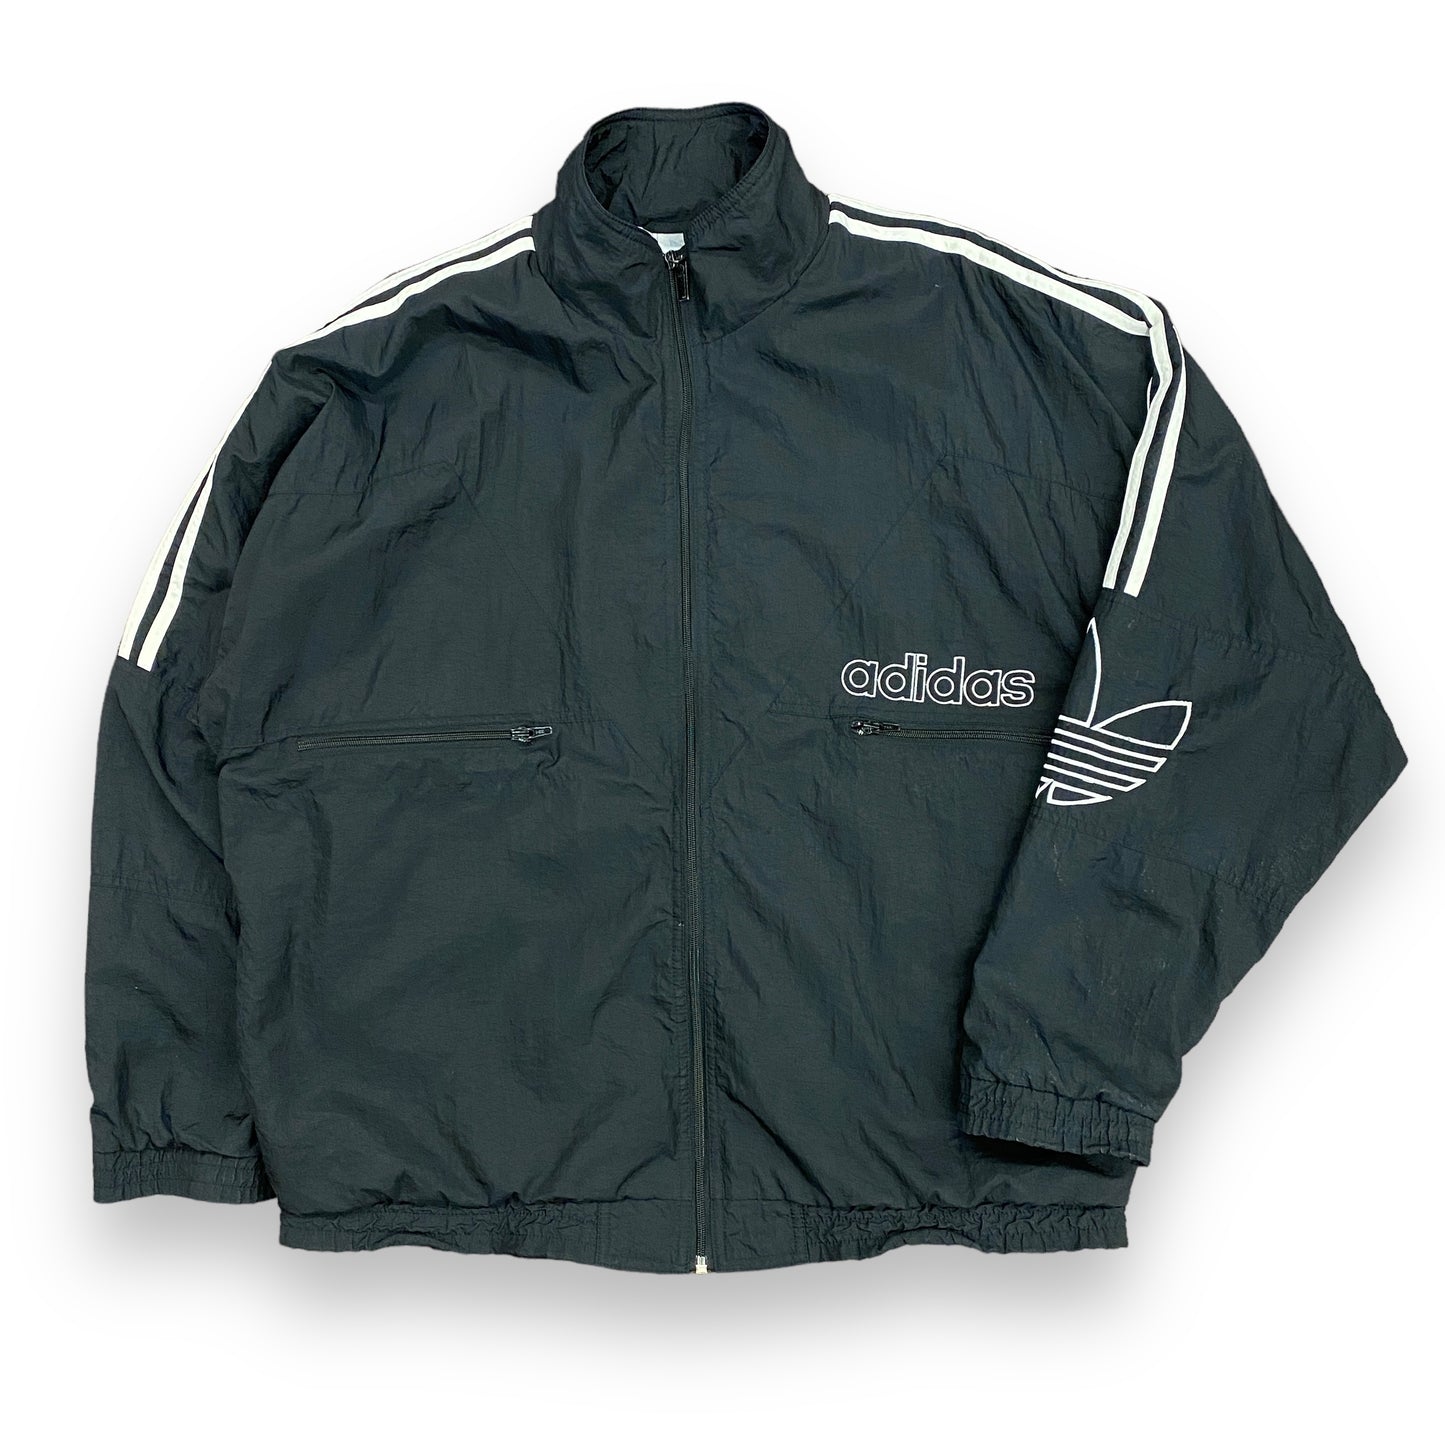 Vintage 1990s Adidas Black Full Zip Track Jacket - Size Large